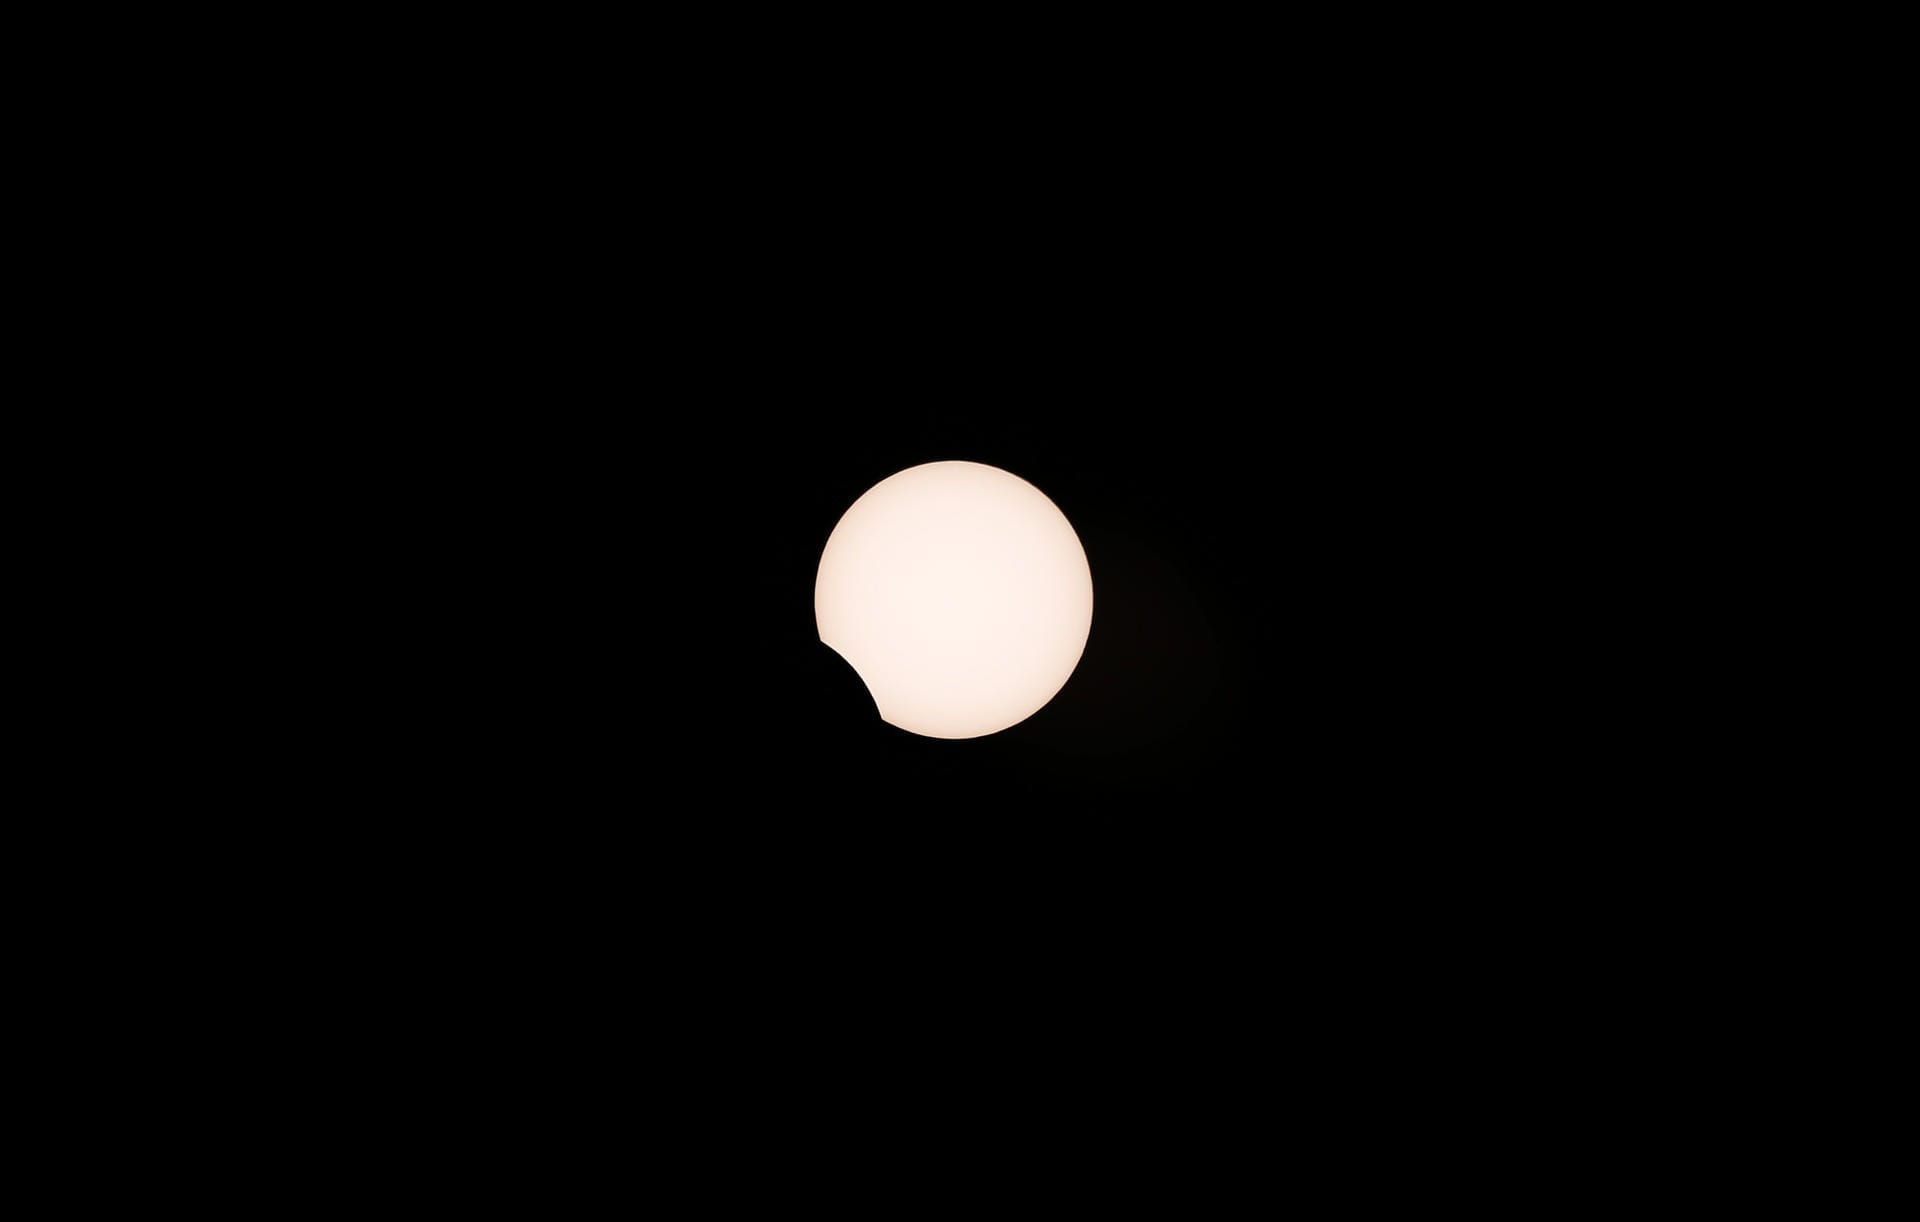 Chile: An einem bestimmten Ort ist eine totale Sonnenfinsternis nur etwa alle 360 Jahre zu sehen.